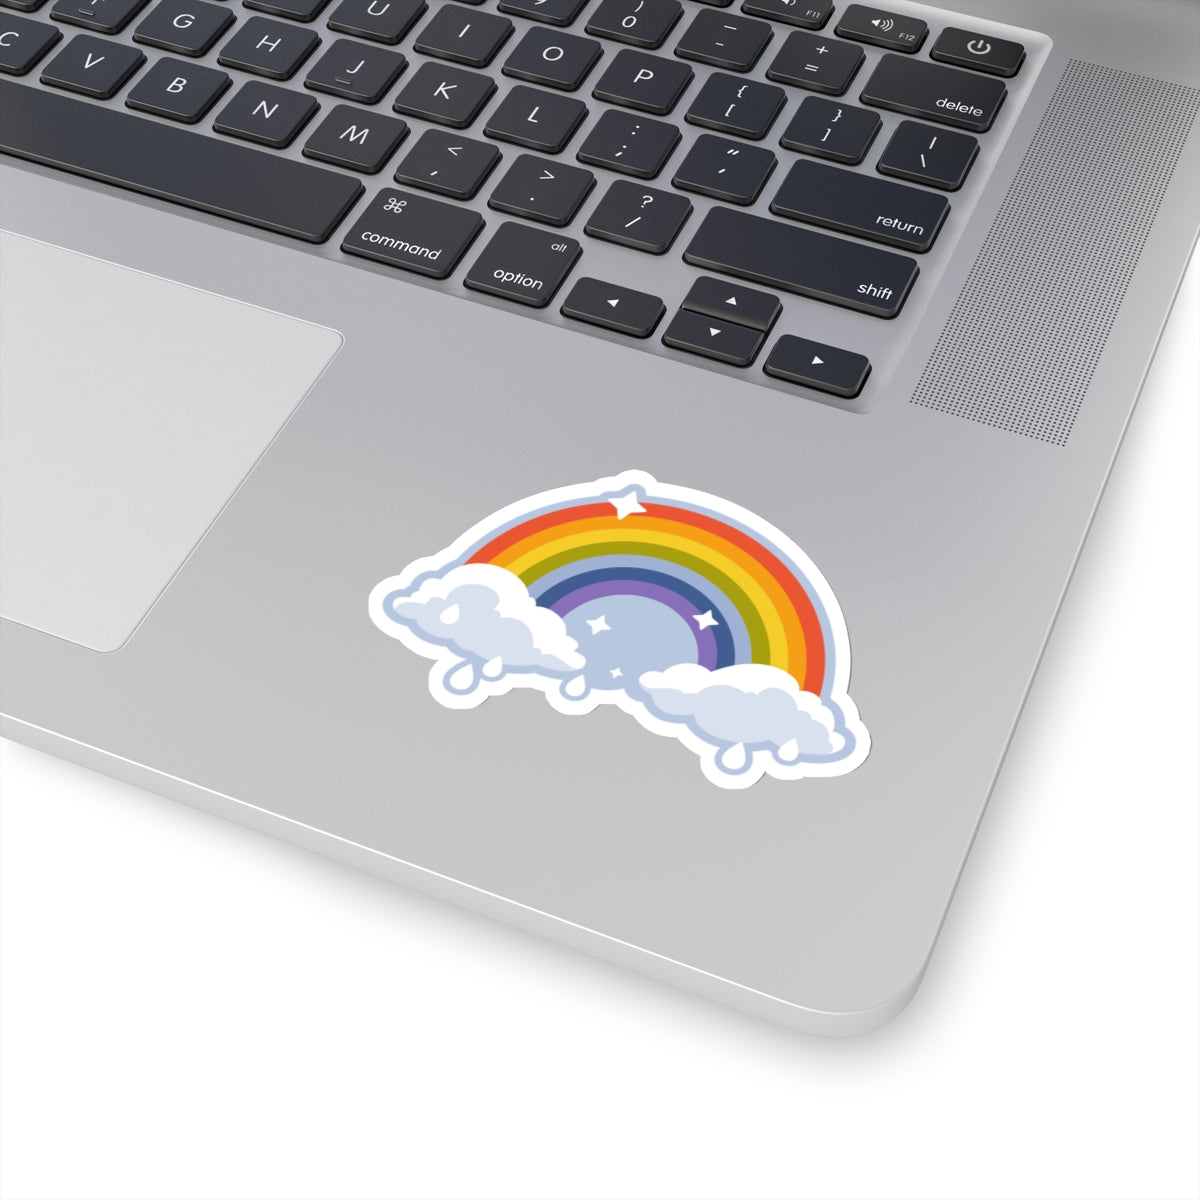 Rainy Day Rainbow Sticker 3" x 3"